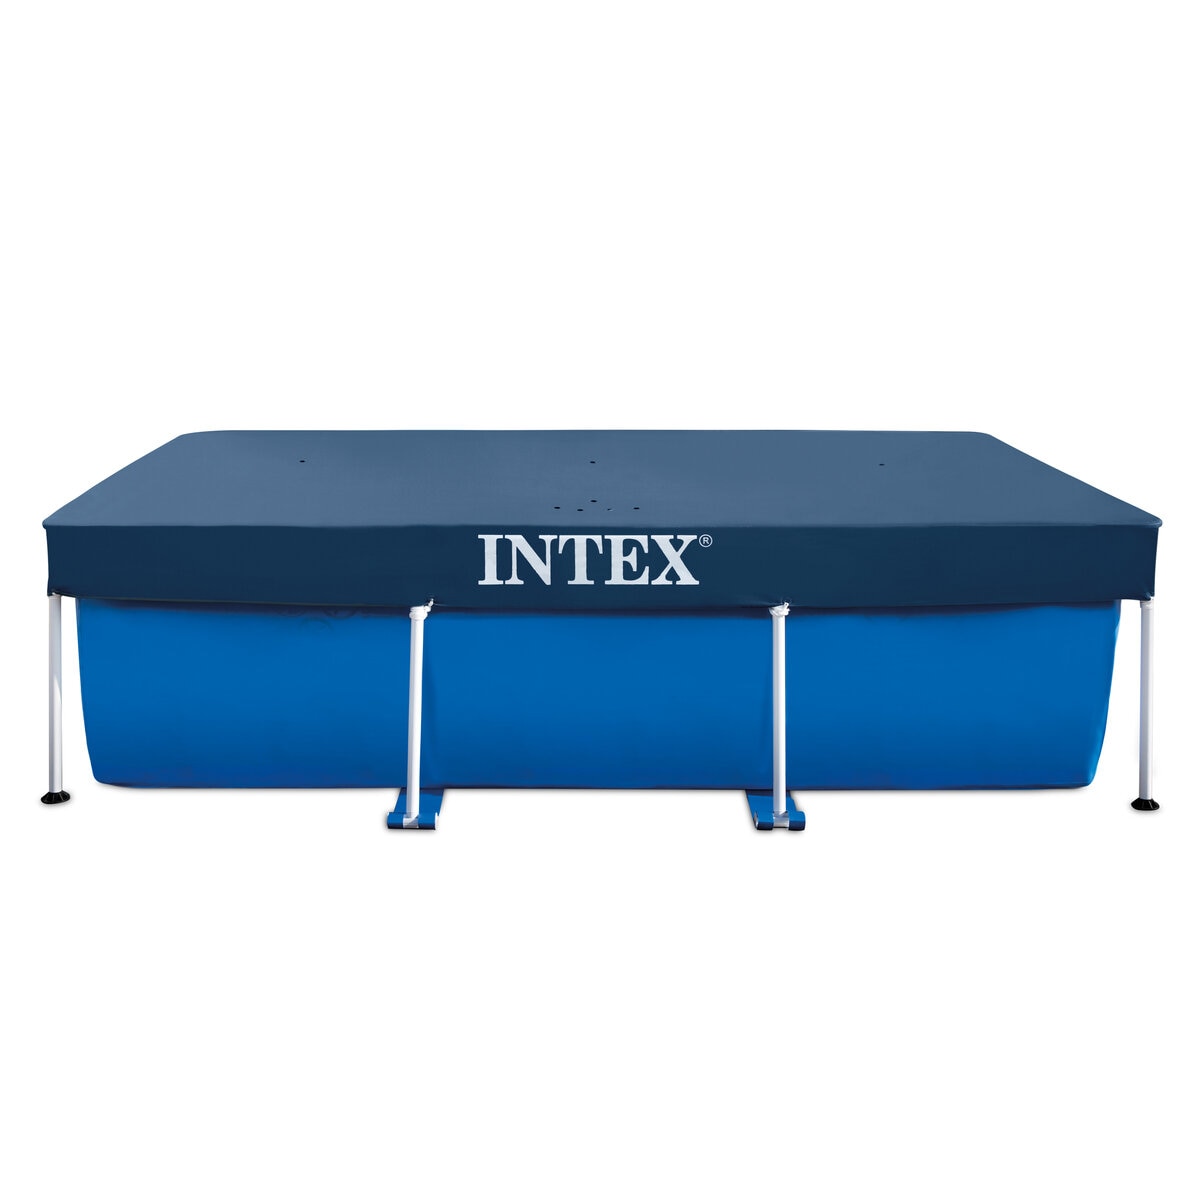 INTEX(インテックス) プール レクタングラフレームプール コストコ